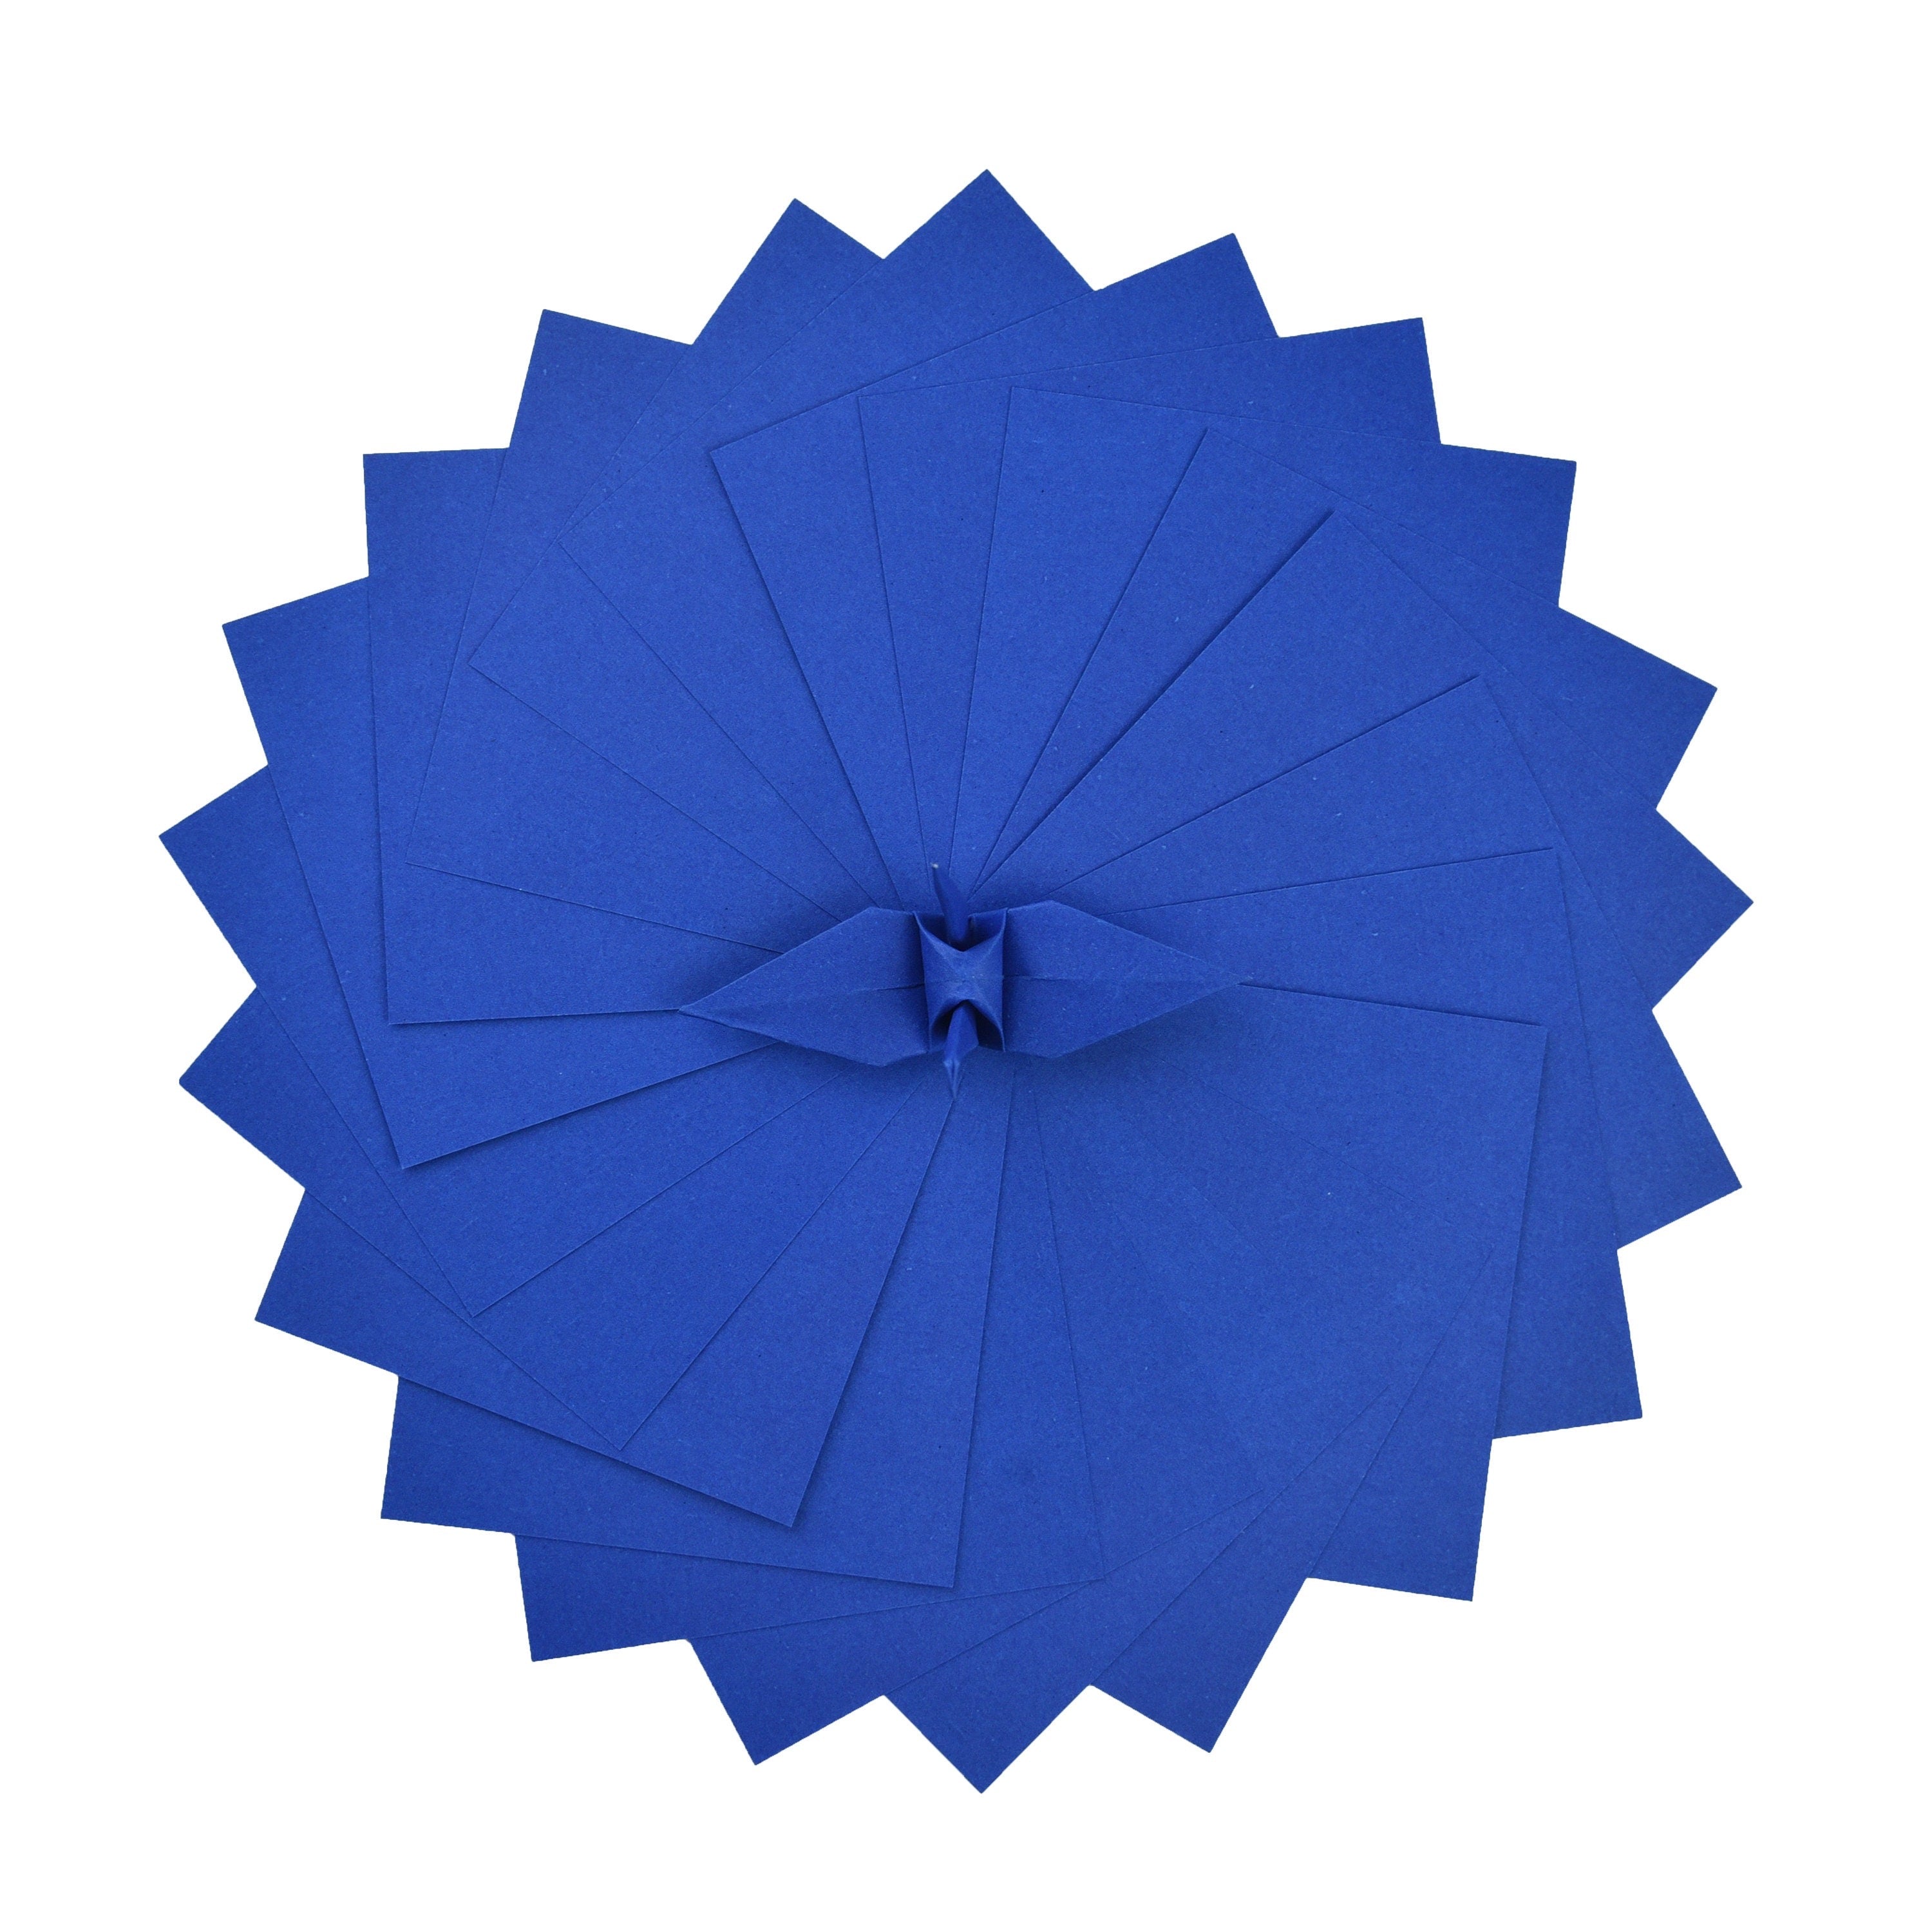 100 Hojas de Papel Origami - 3x3 pulgadas - Paquete de Papel Cuadrado para Plegar, Grullas de Origami y Decoración - S20